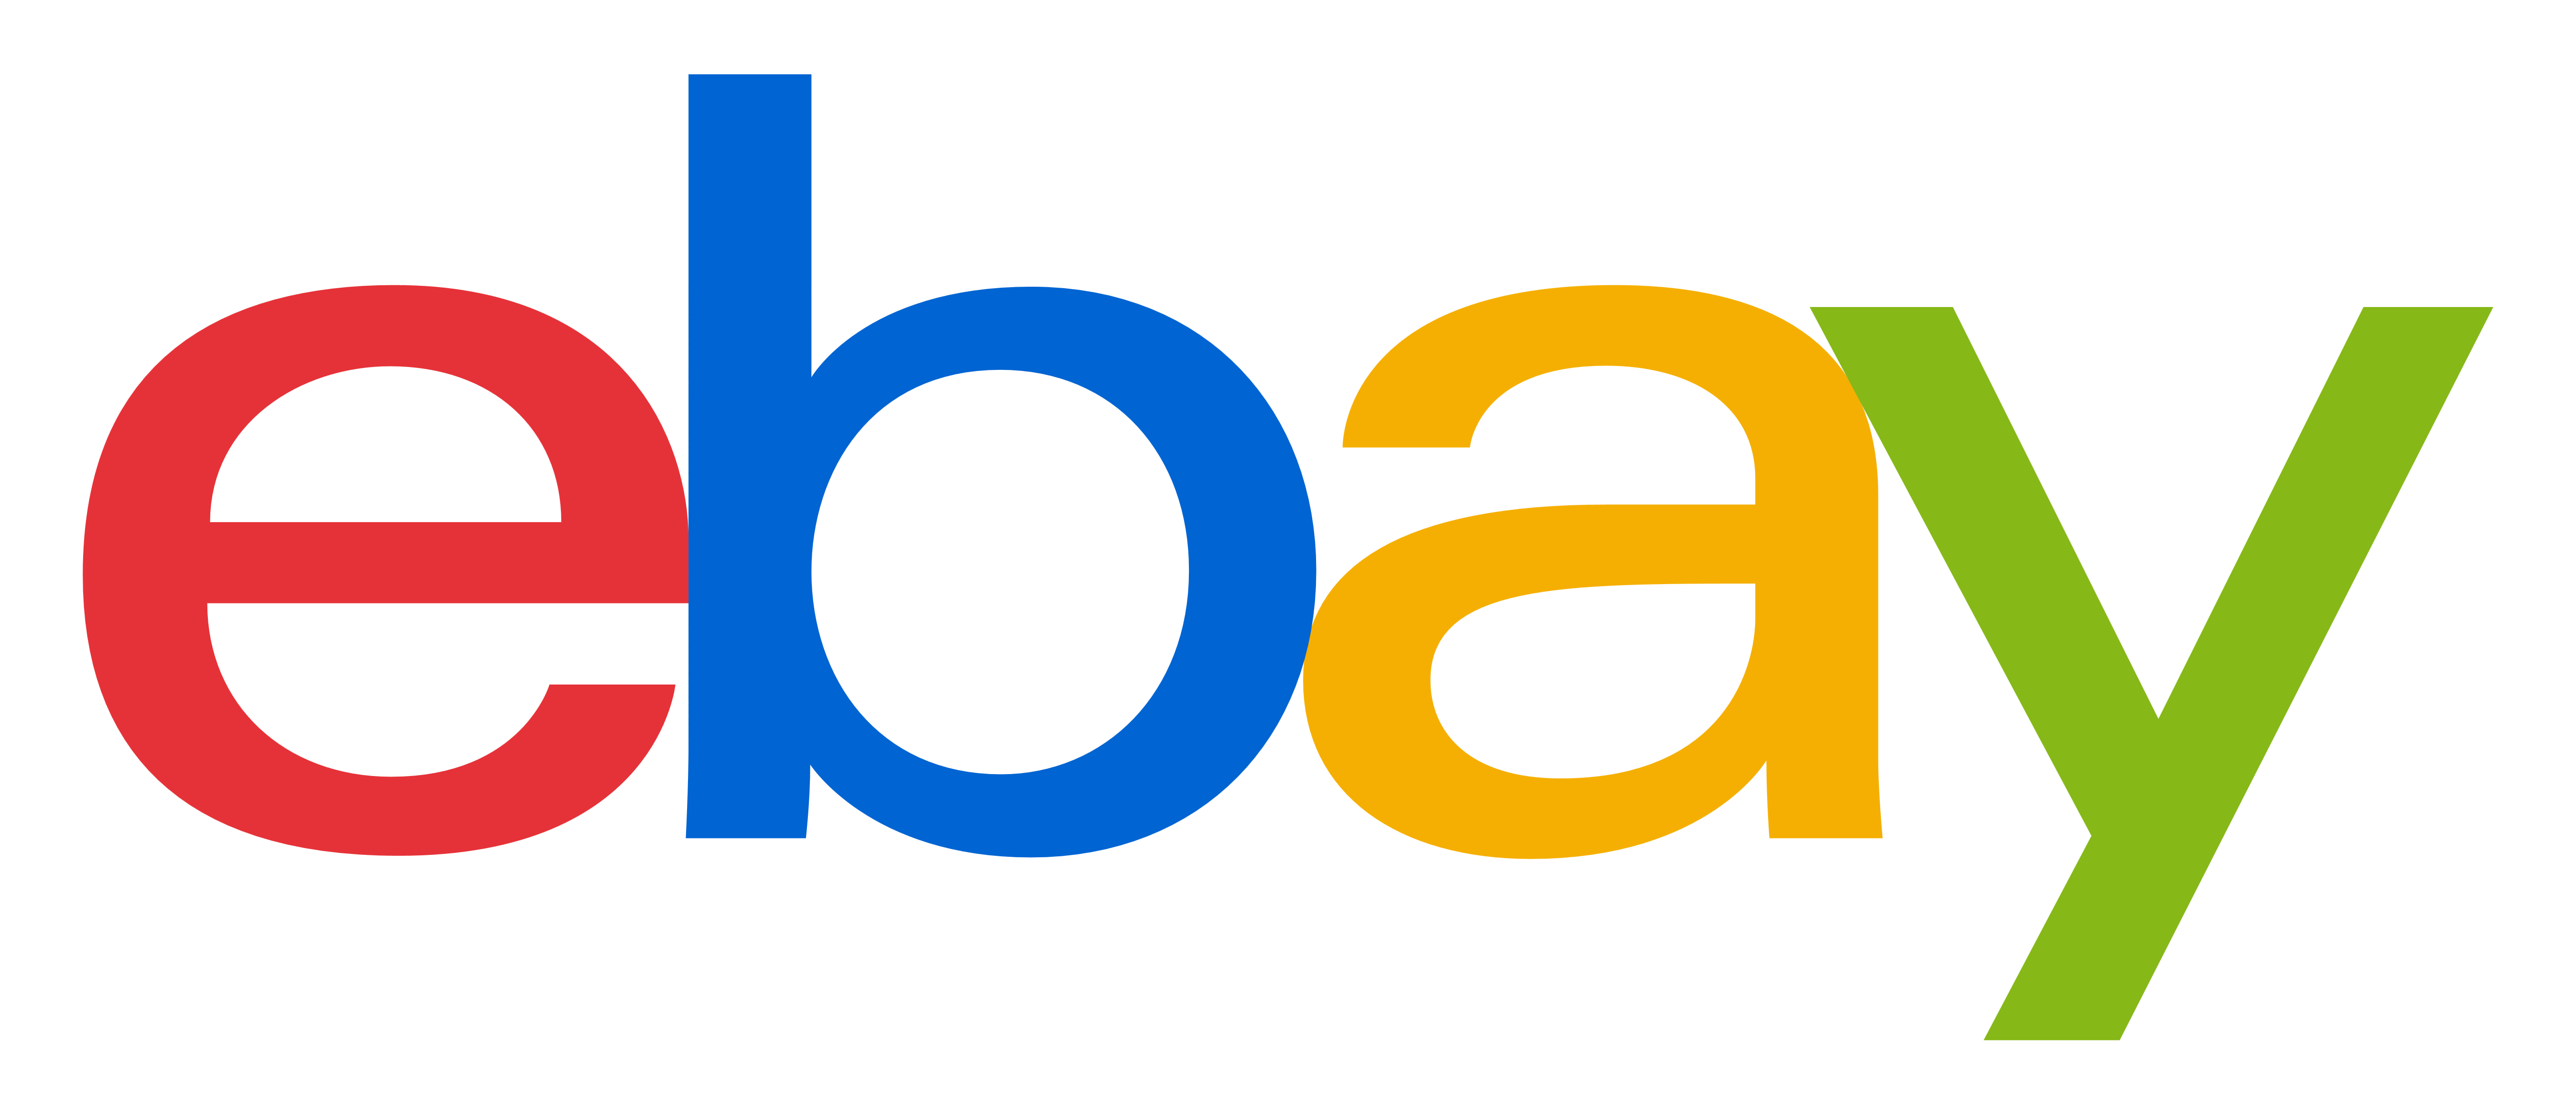 ebay-logo-Transparent-downloa